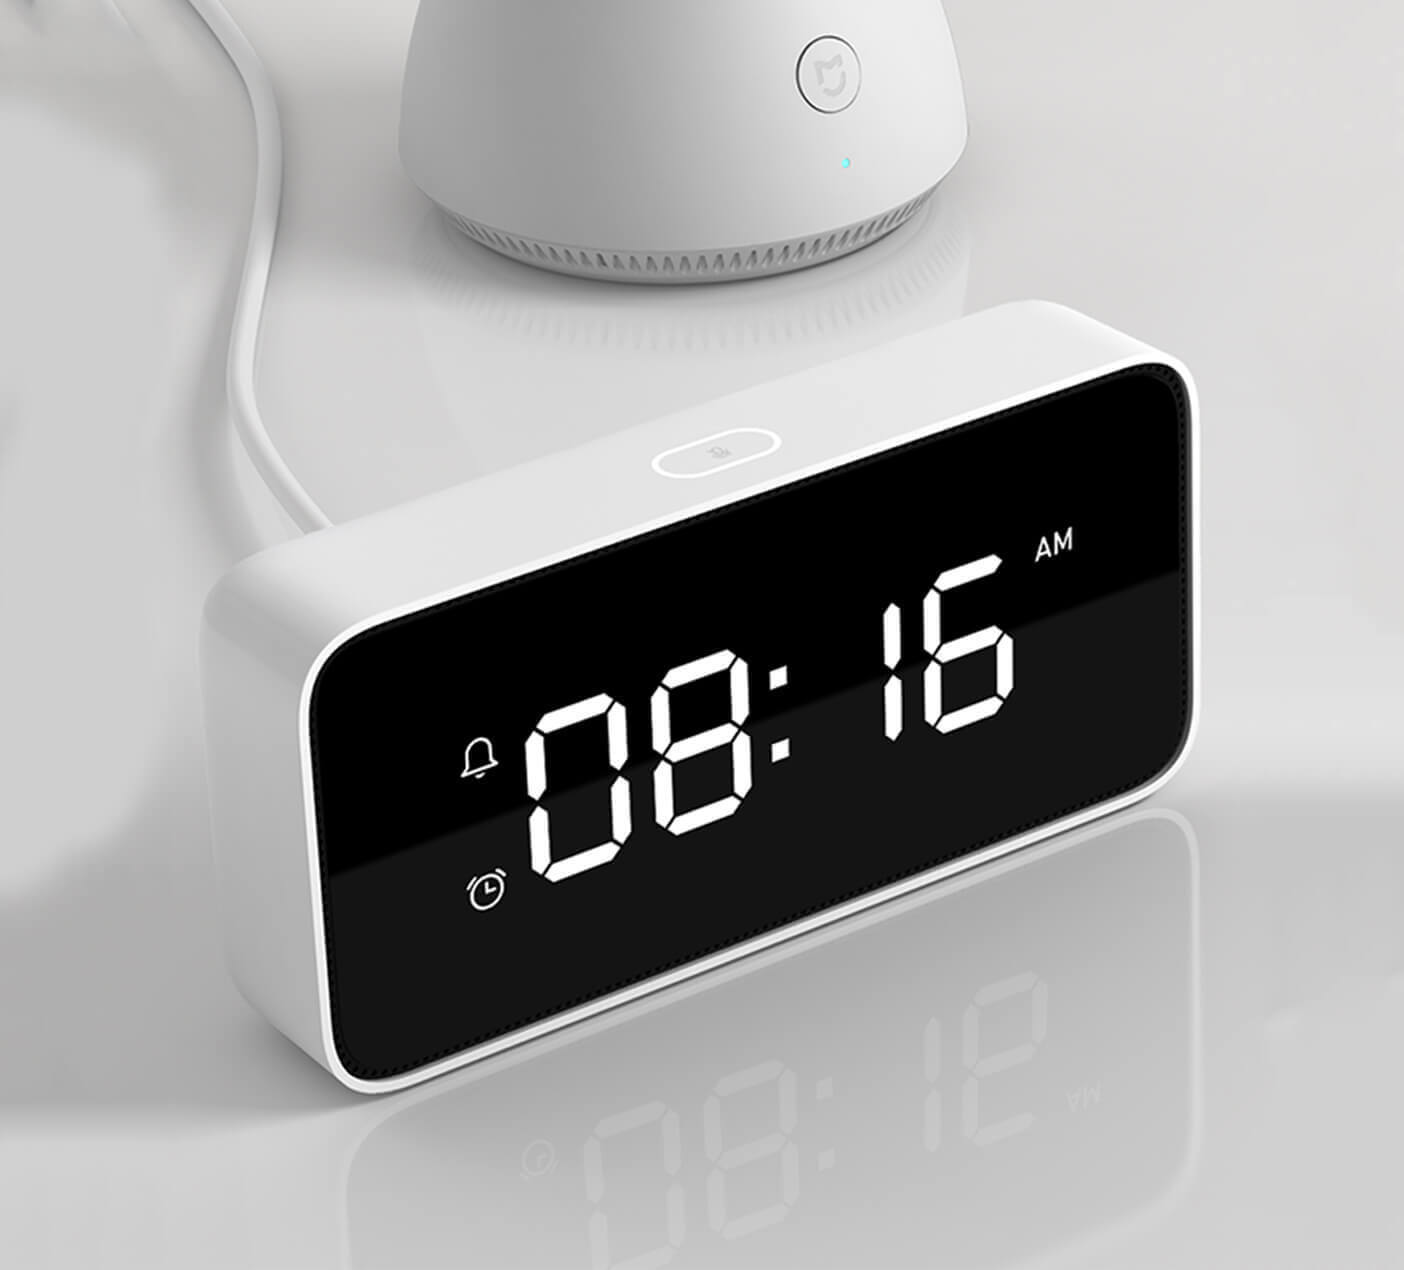 Đồng hồ báo thức điện từ nhãn hiệu Xiaomi Alarm Clock